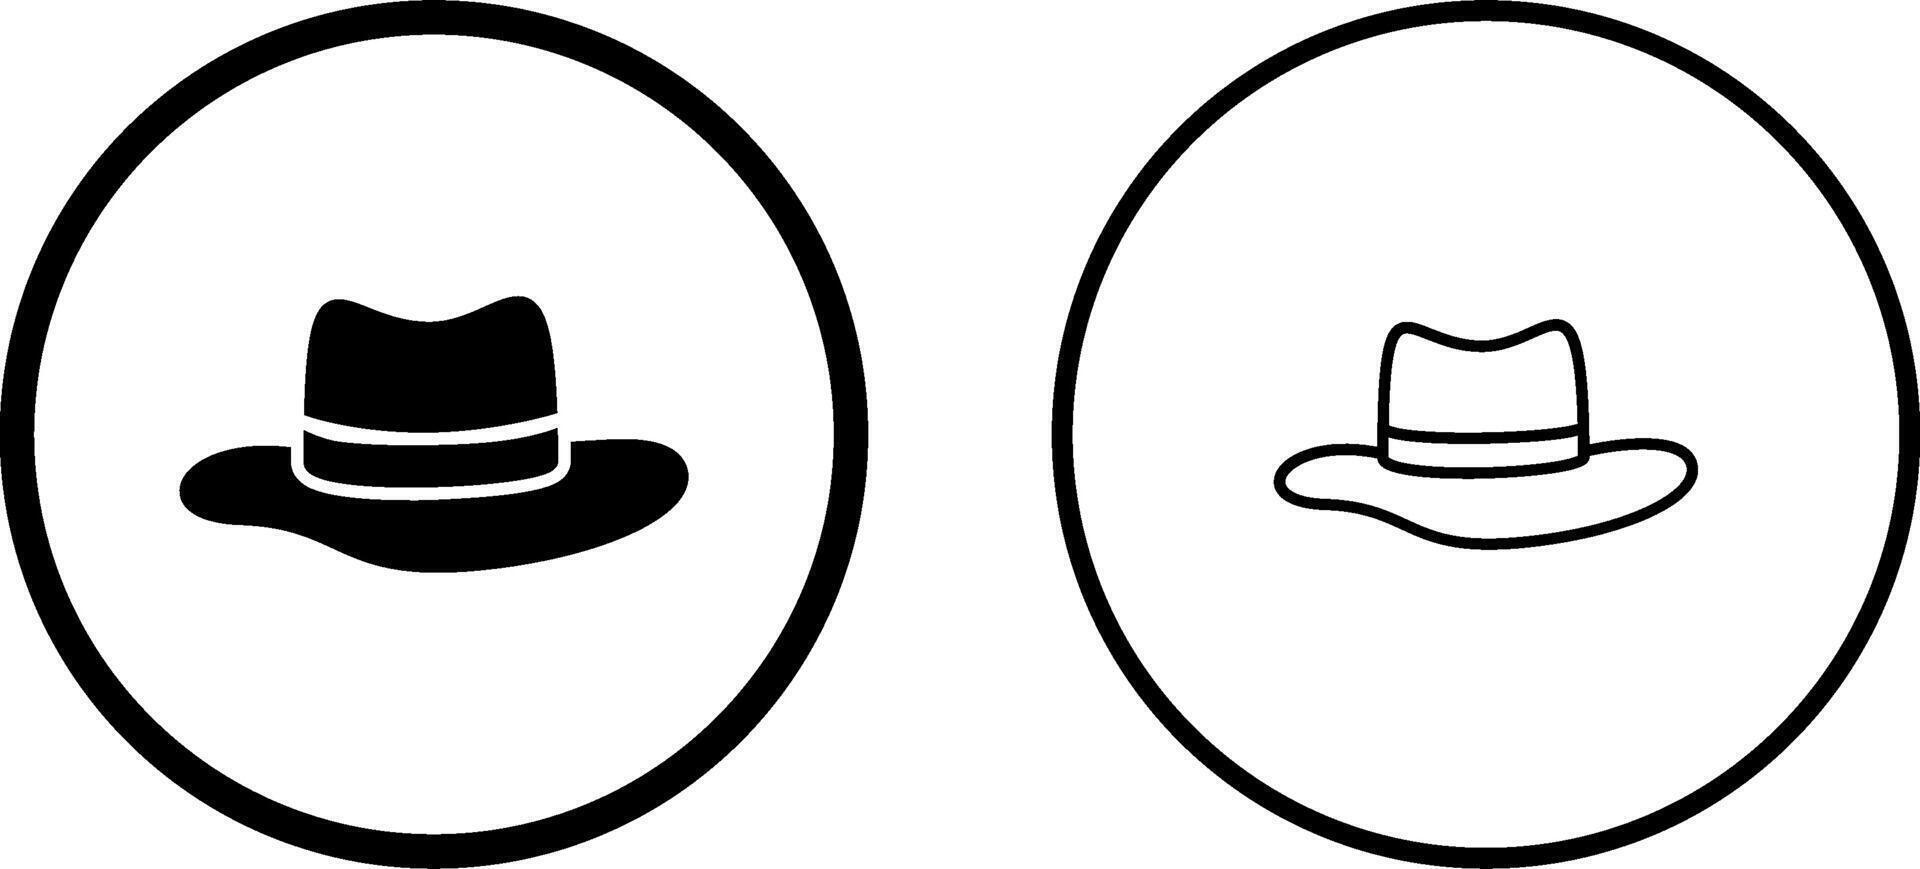 chapeau v vecteur icône